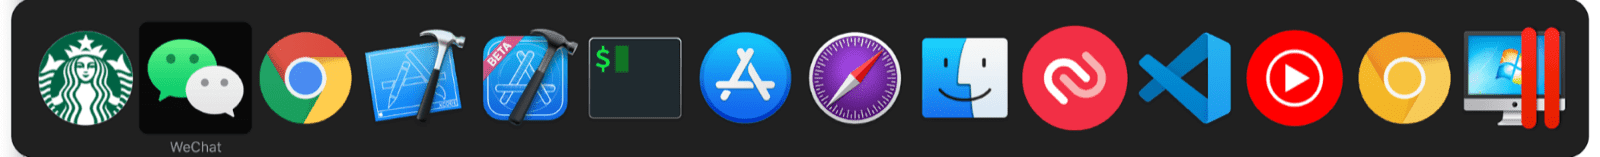 Многозадачный переключатель macOS включает в себя мини-приложения наряду с обычными приложениями macOS.